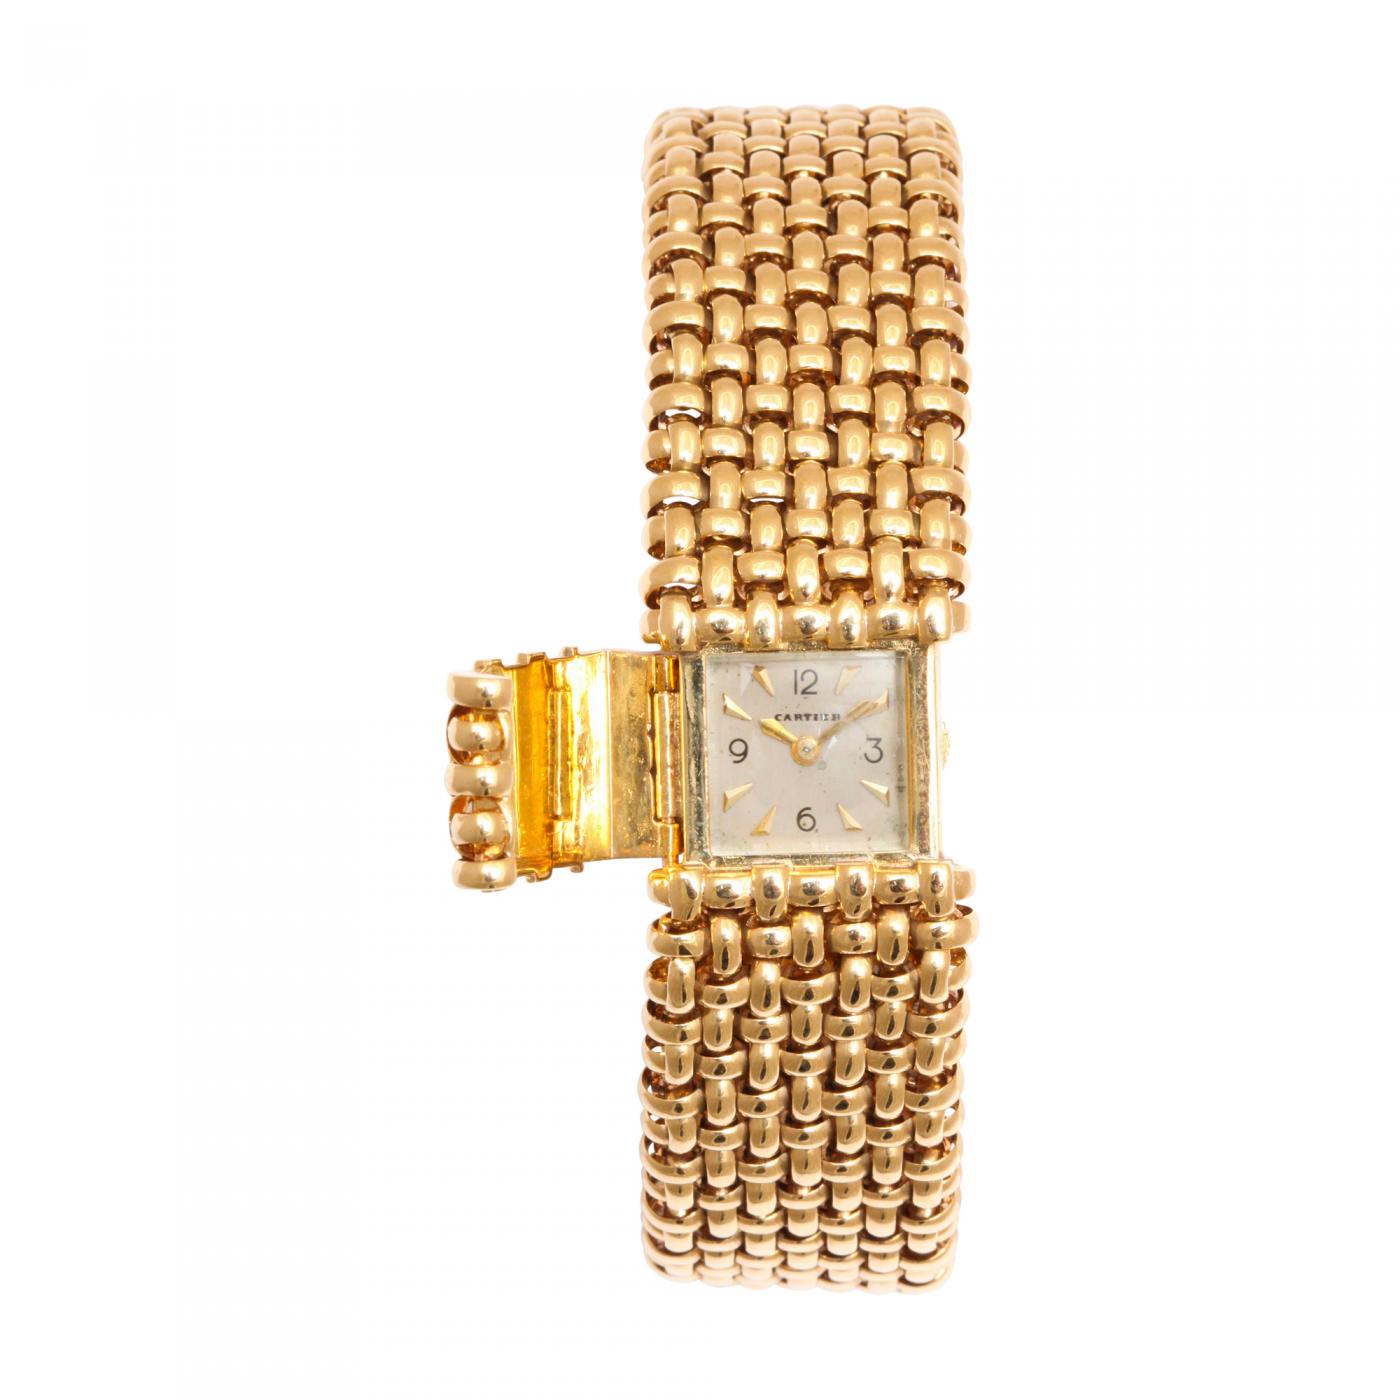 cartier 18k gold watch